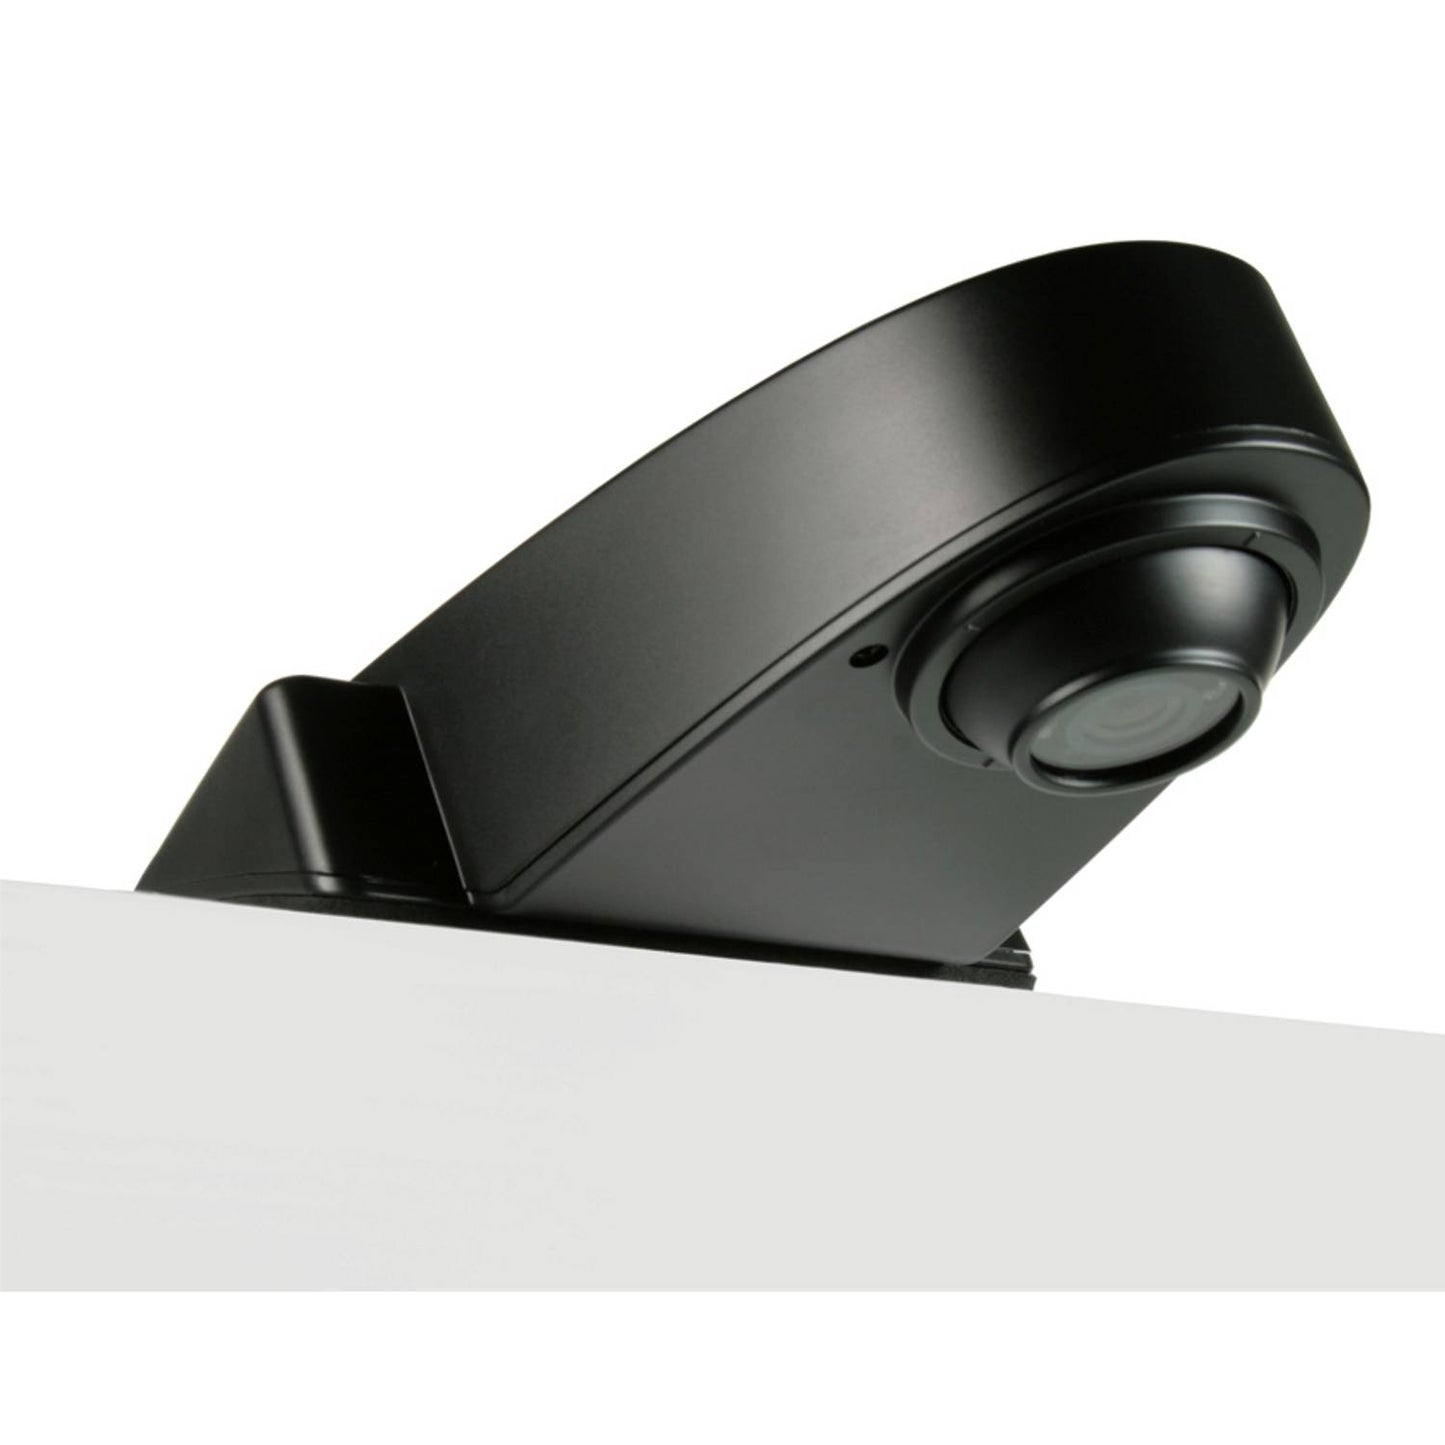 Caméra de toit Caratec Safety CS100DLA pour camionnettes avec projecteur LED intégré